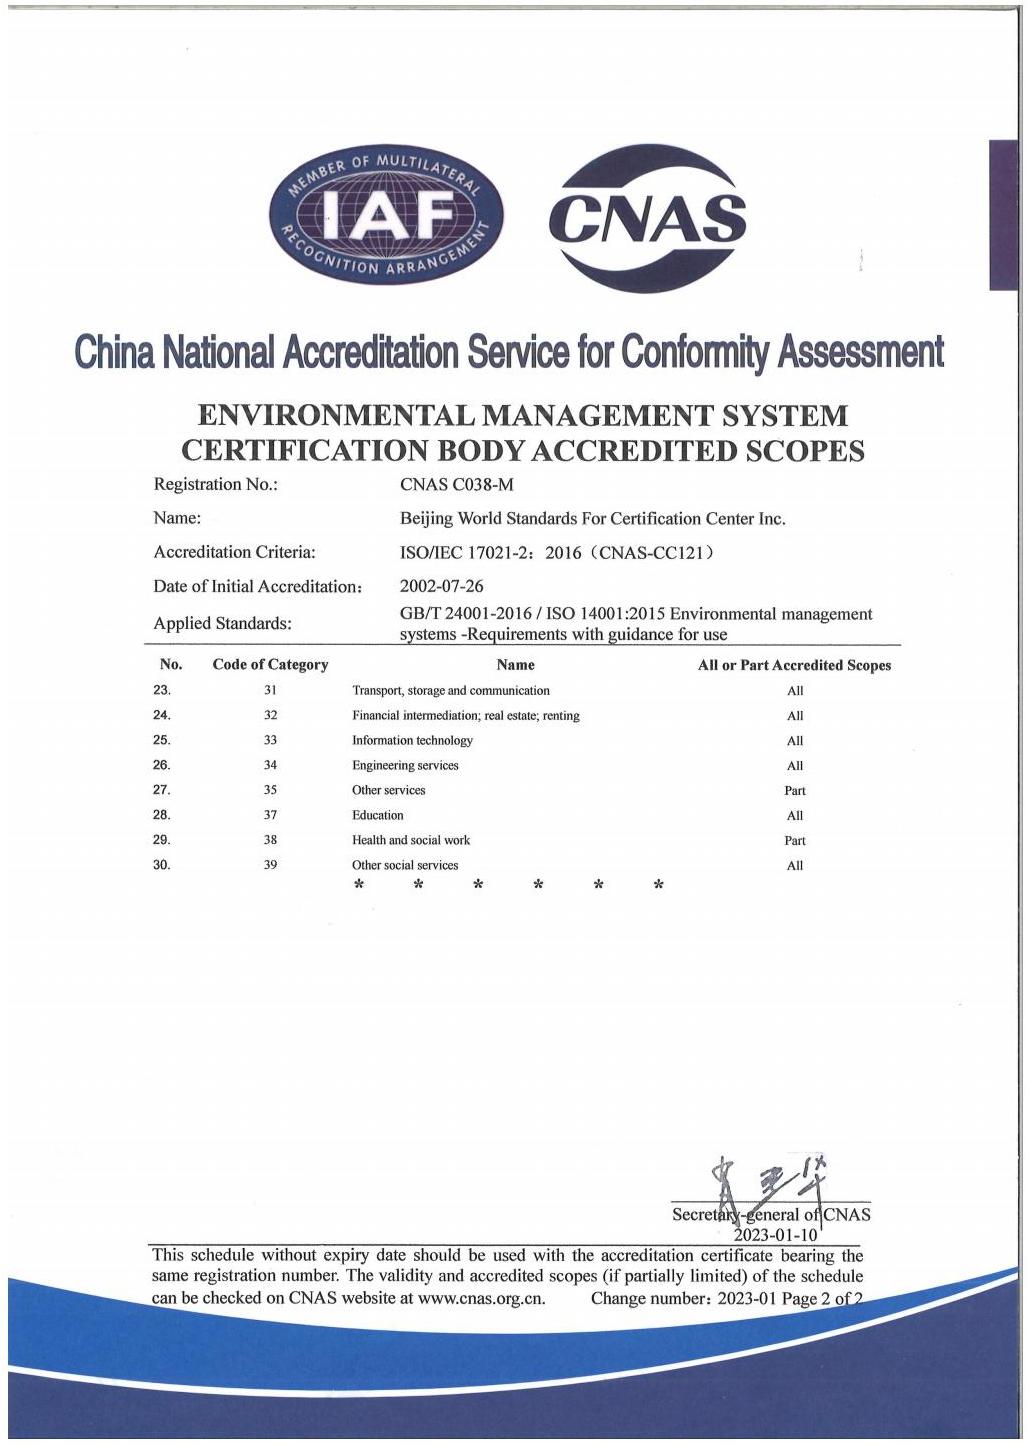 环境管理体系认证机构认可业务范围-中英文_03.jpg